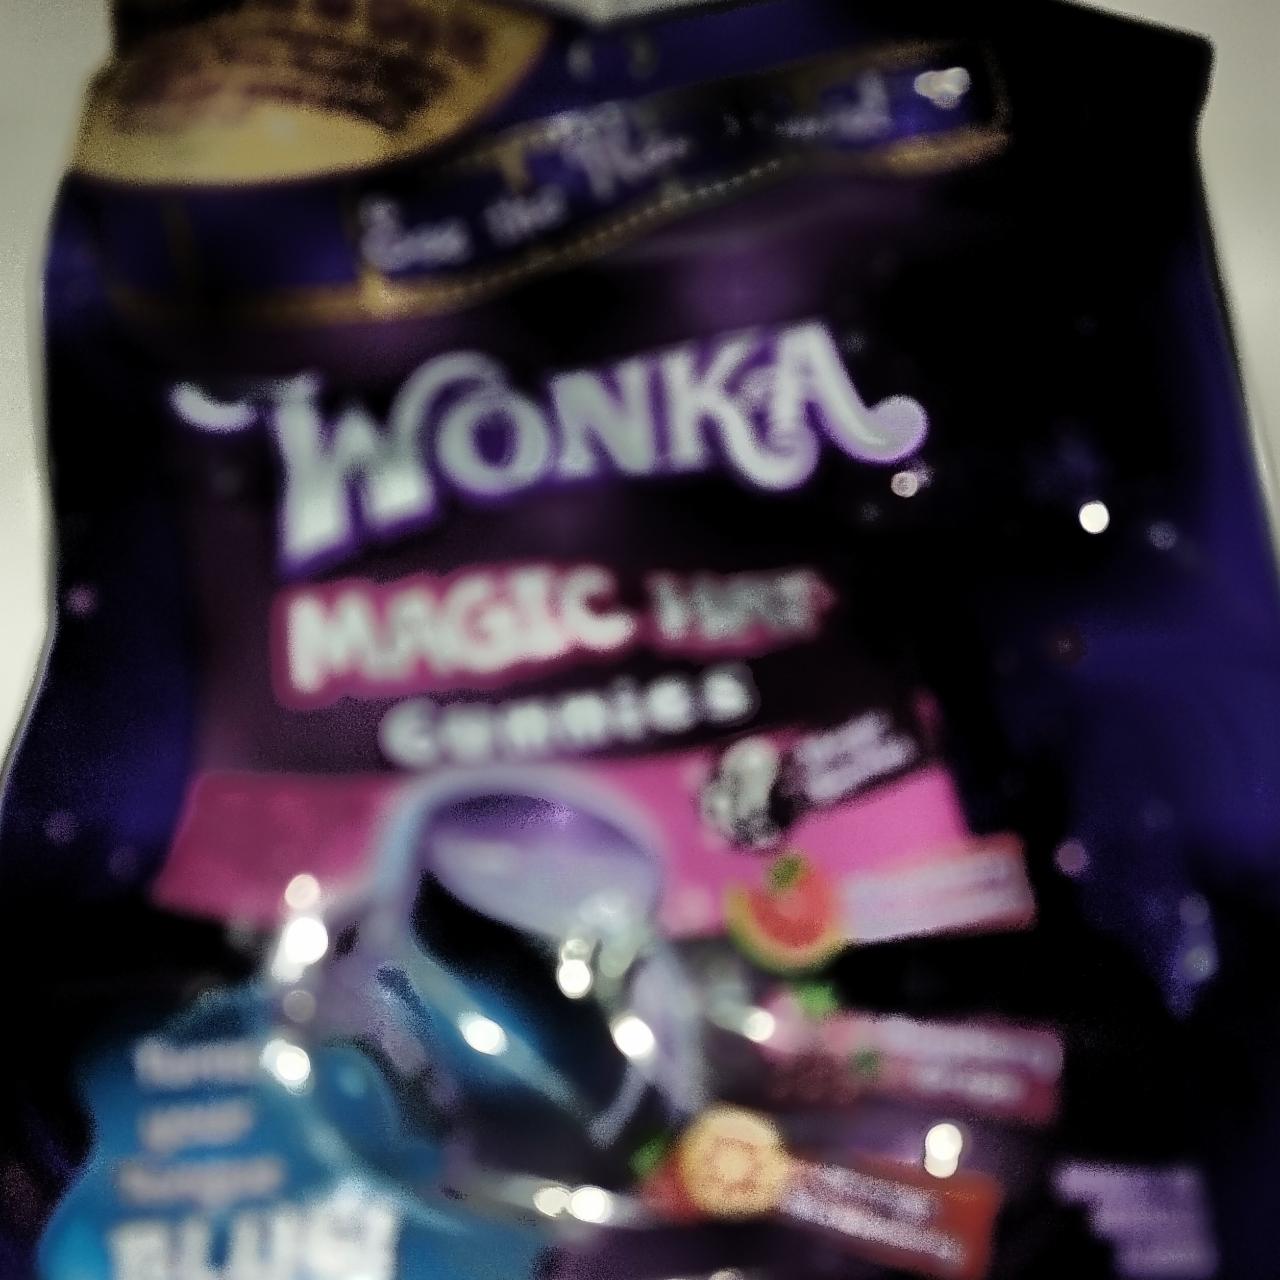 Fotografie - Wonka Magic Hat Gummies Ferrara Candy